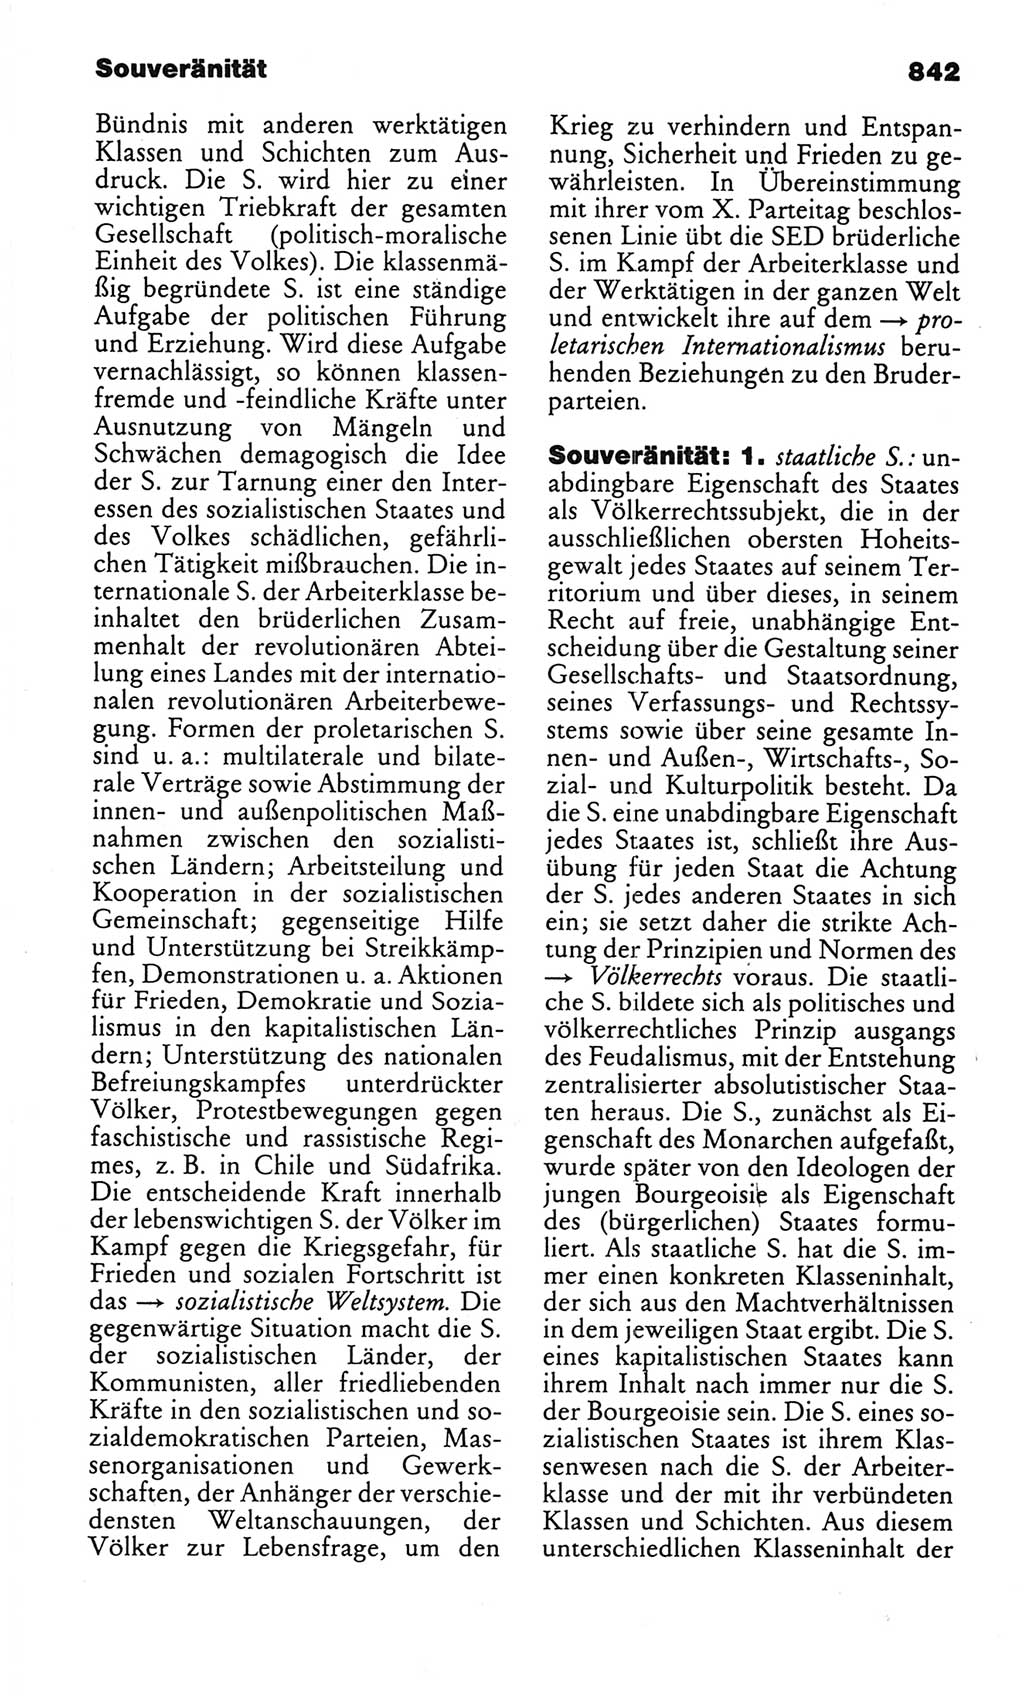 Kleines politisches Wörterbuch [Deutsche Demokratische Republik (DDR)] 1986, Seite 842 (Kl. pol. Wb. DDR 1986, S. 842)